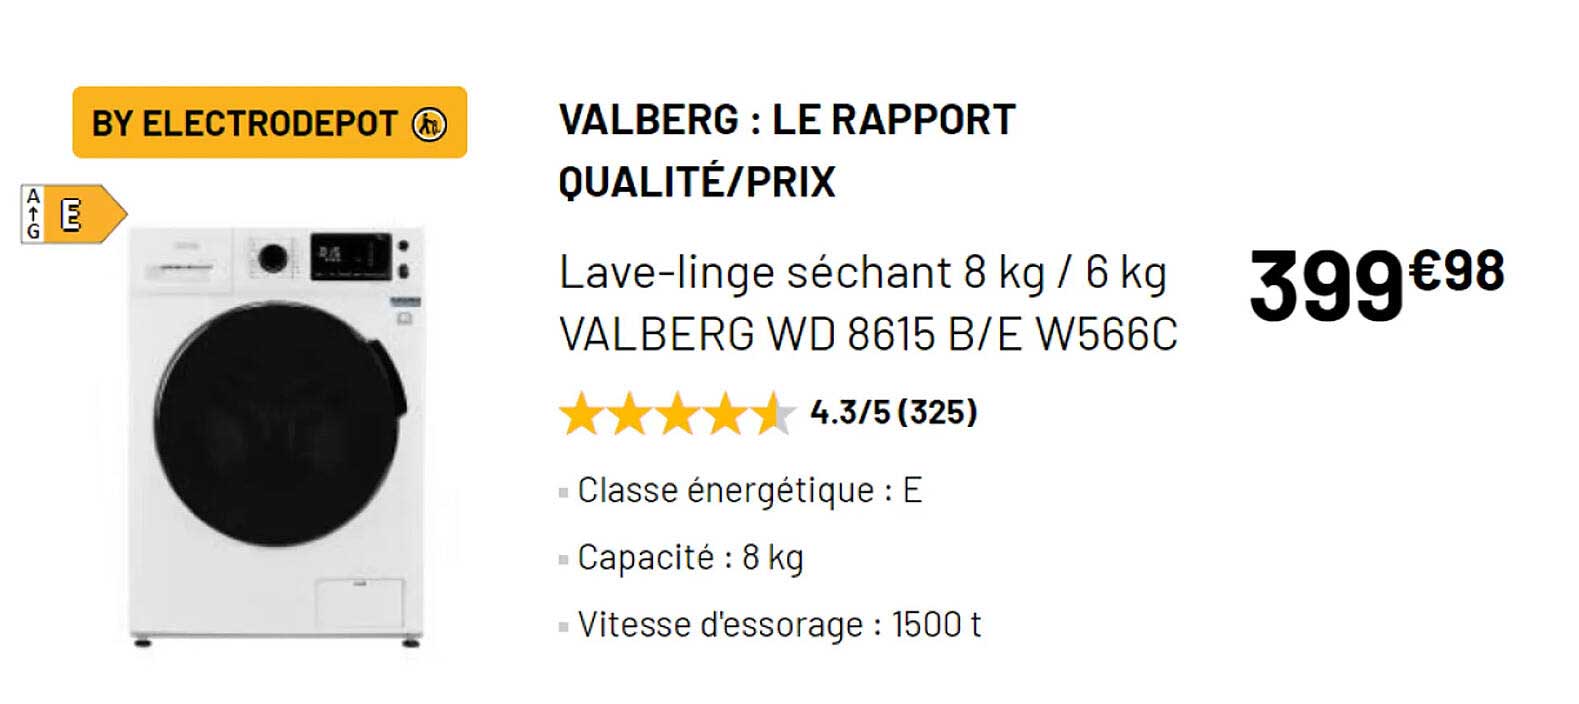 Lave-linge séchant 8 kg / 6 kg VALBERG WD 8615 B/E W566C - Electro